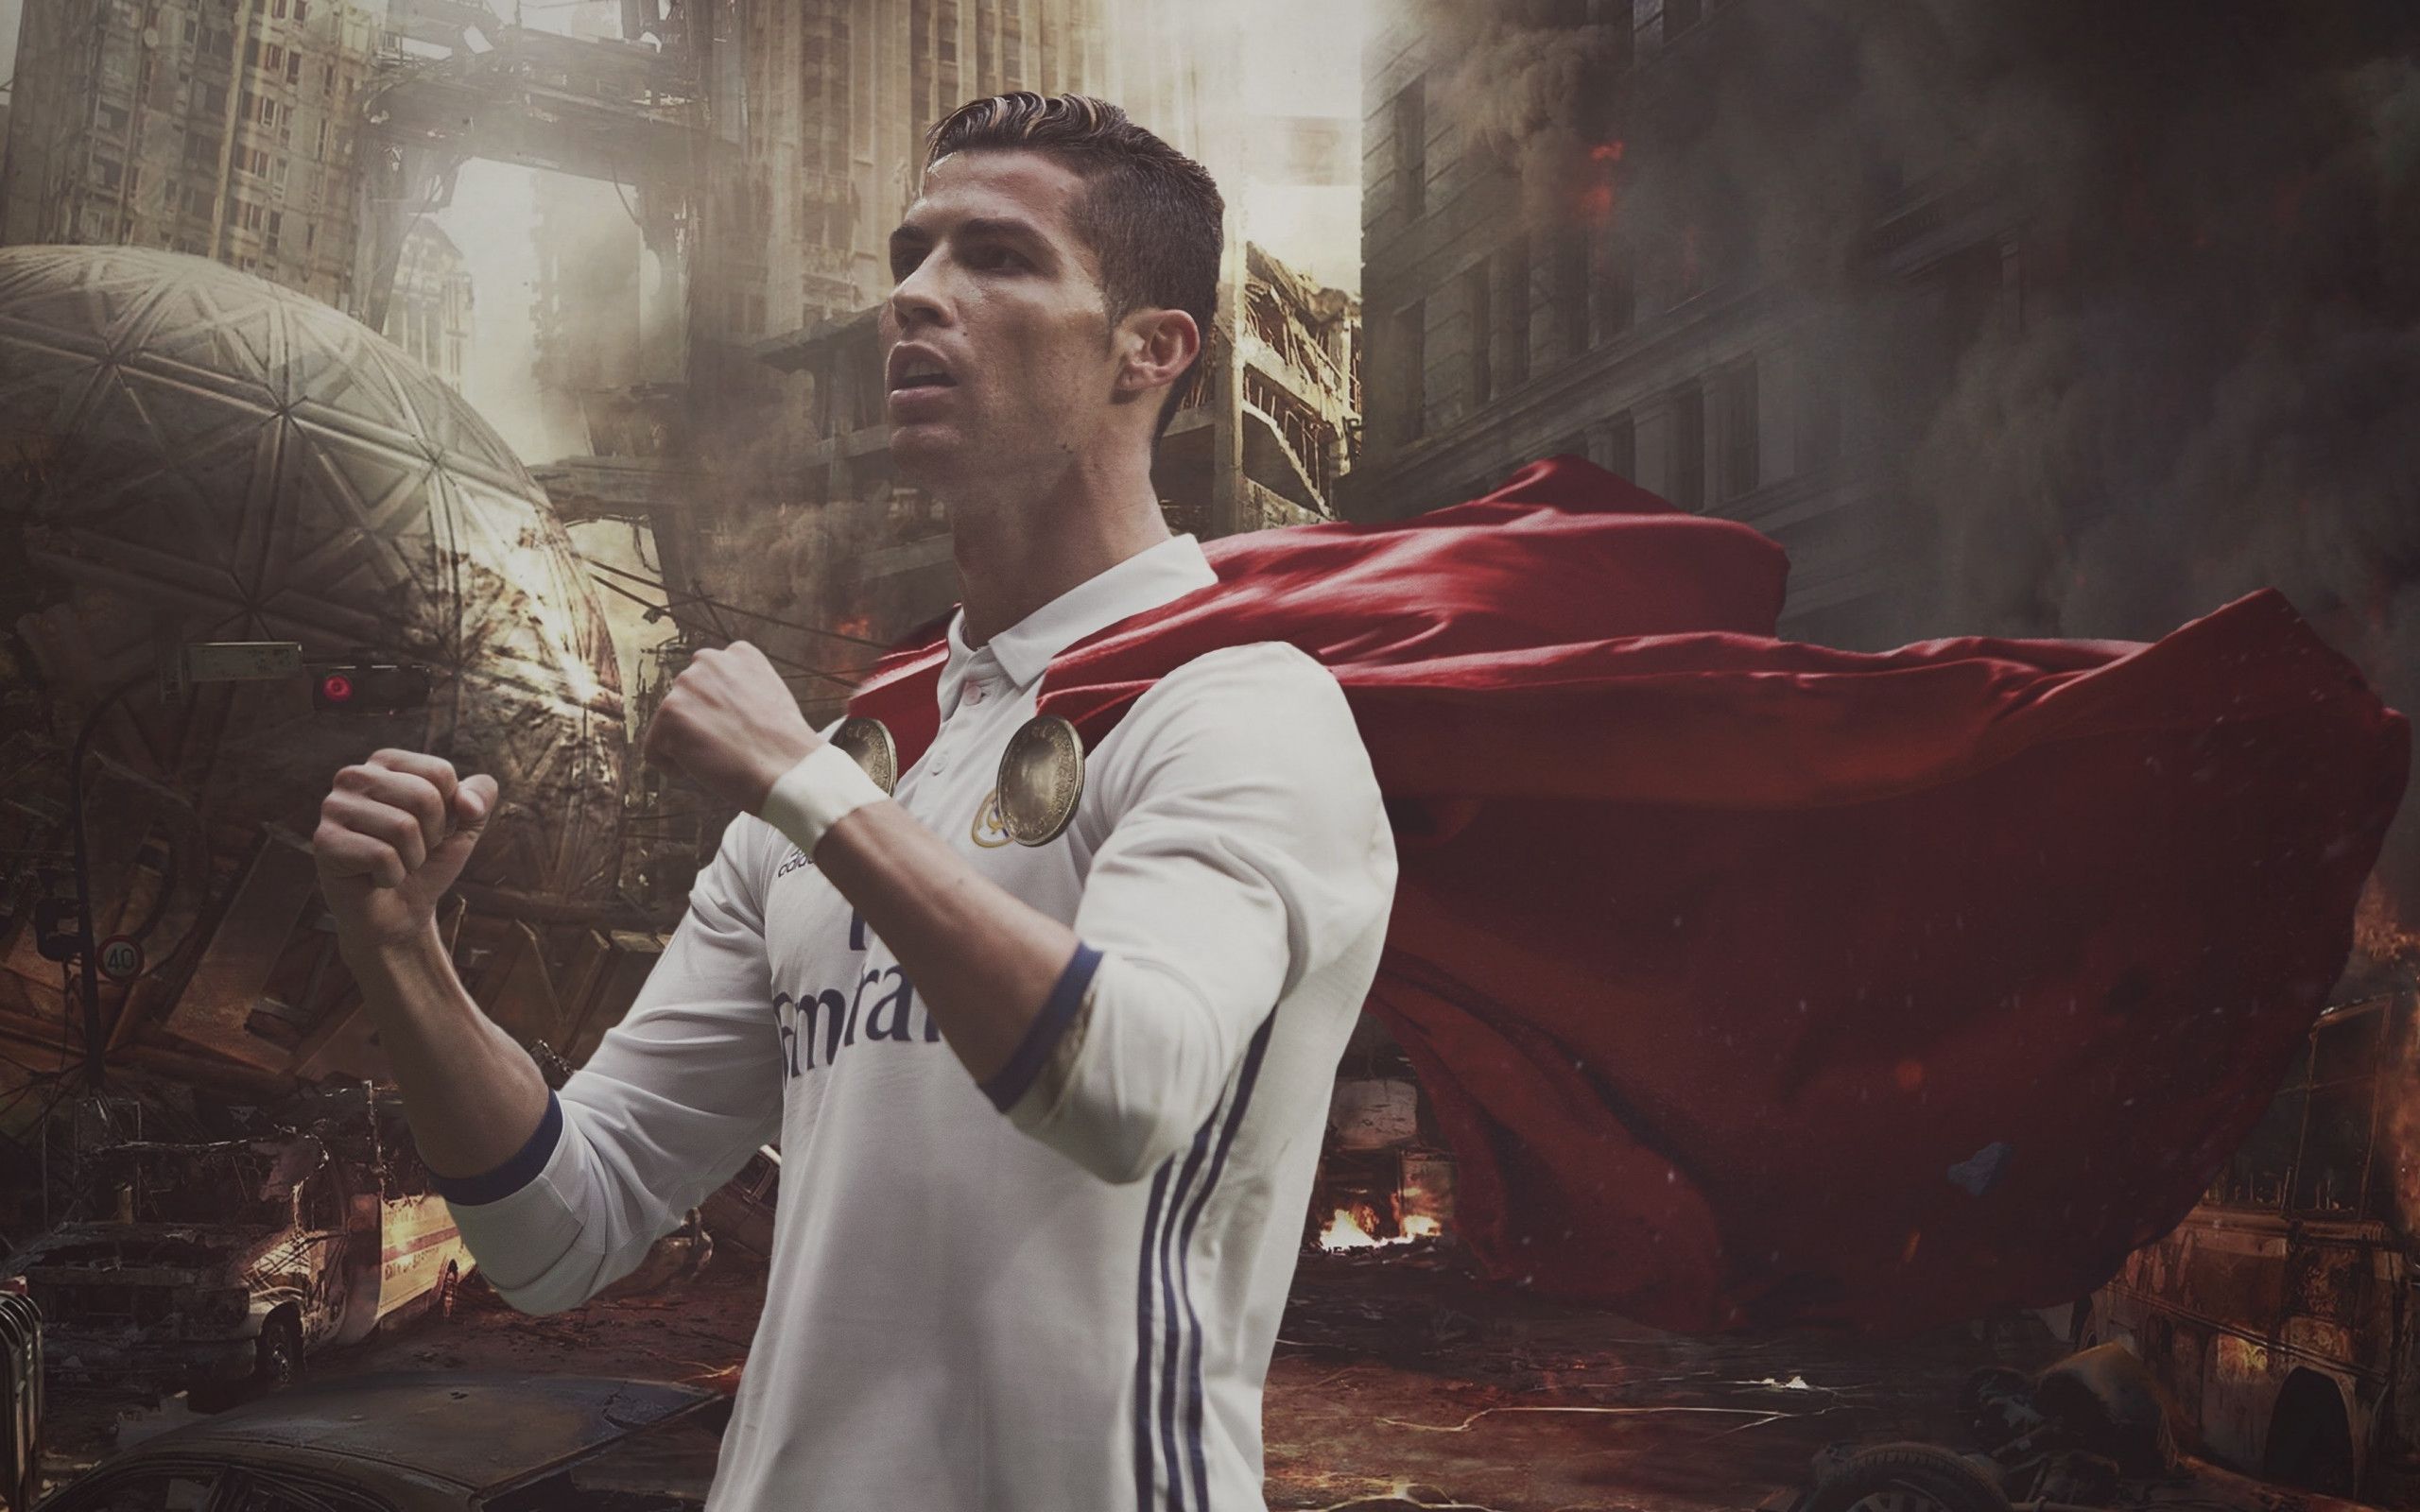 Download wallpaper: Cristiano Ronaldo 2560x1600